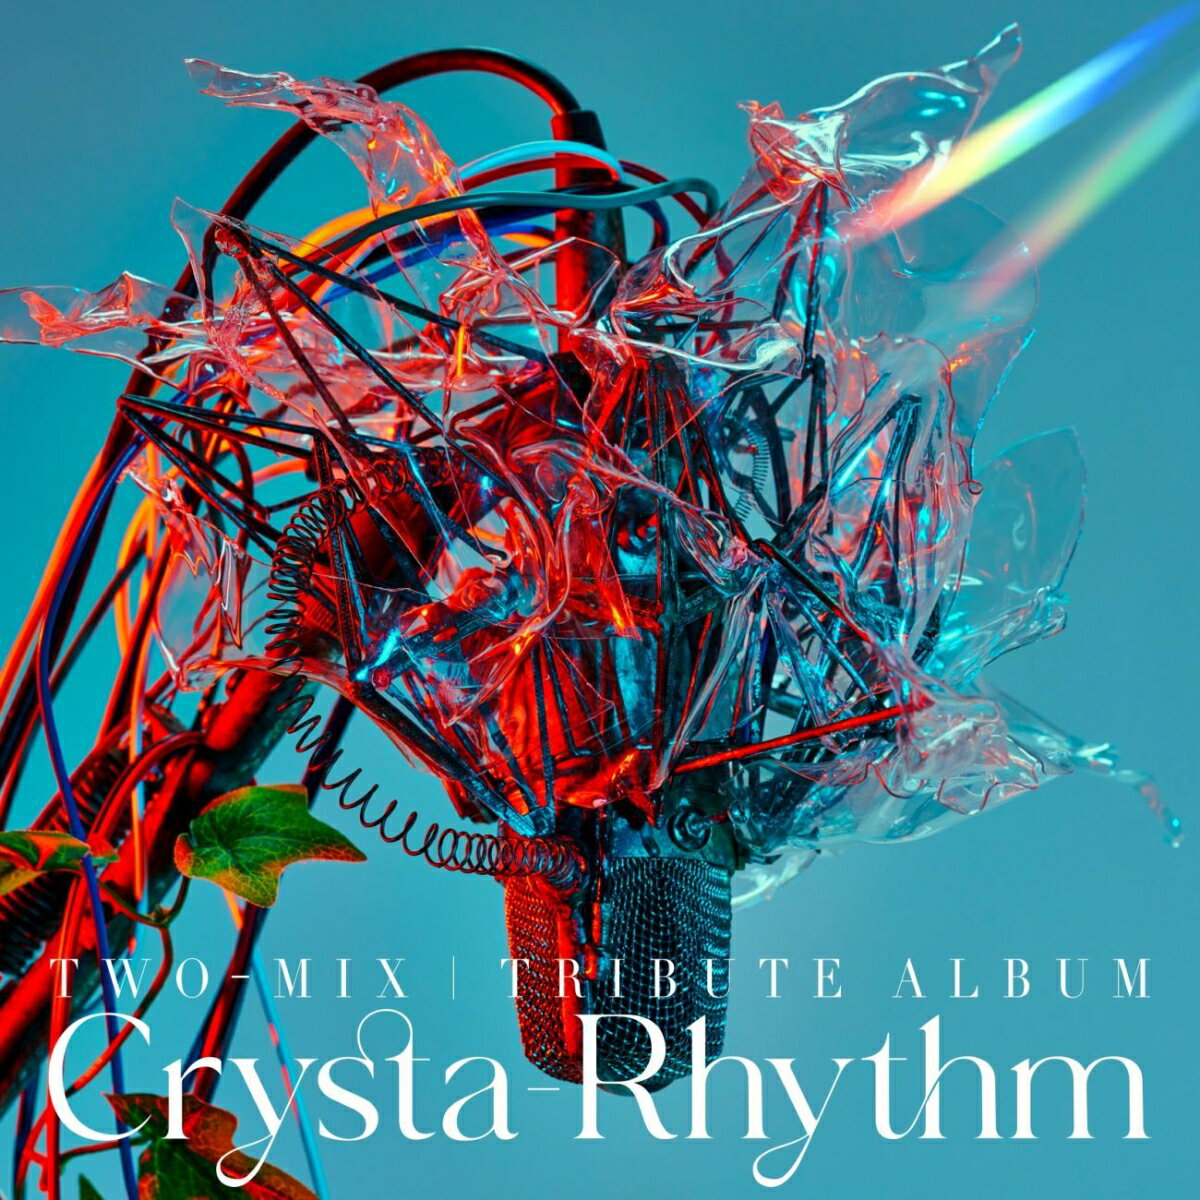 TWO-MIX Tribute Album ”Crysta-Rhythm”